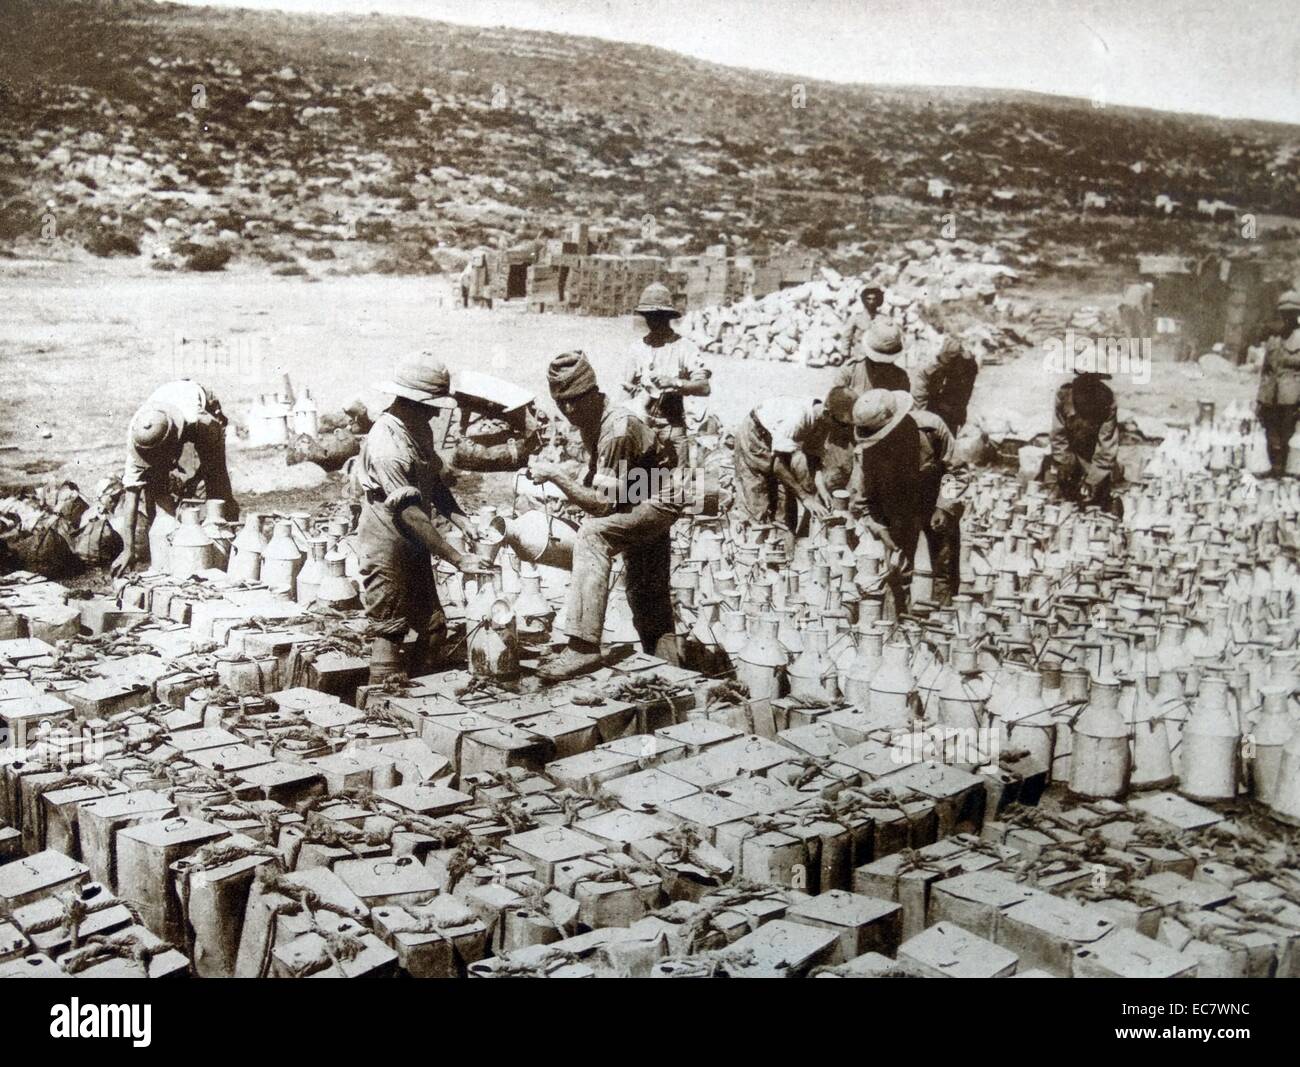 Dosen mit gefiltertem Wasser ist für das Mittelmeer Expeditionskorps geladen während der Schlacht von Gallipoli. Stockfoto